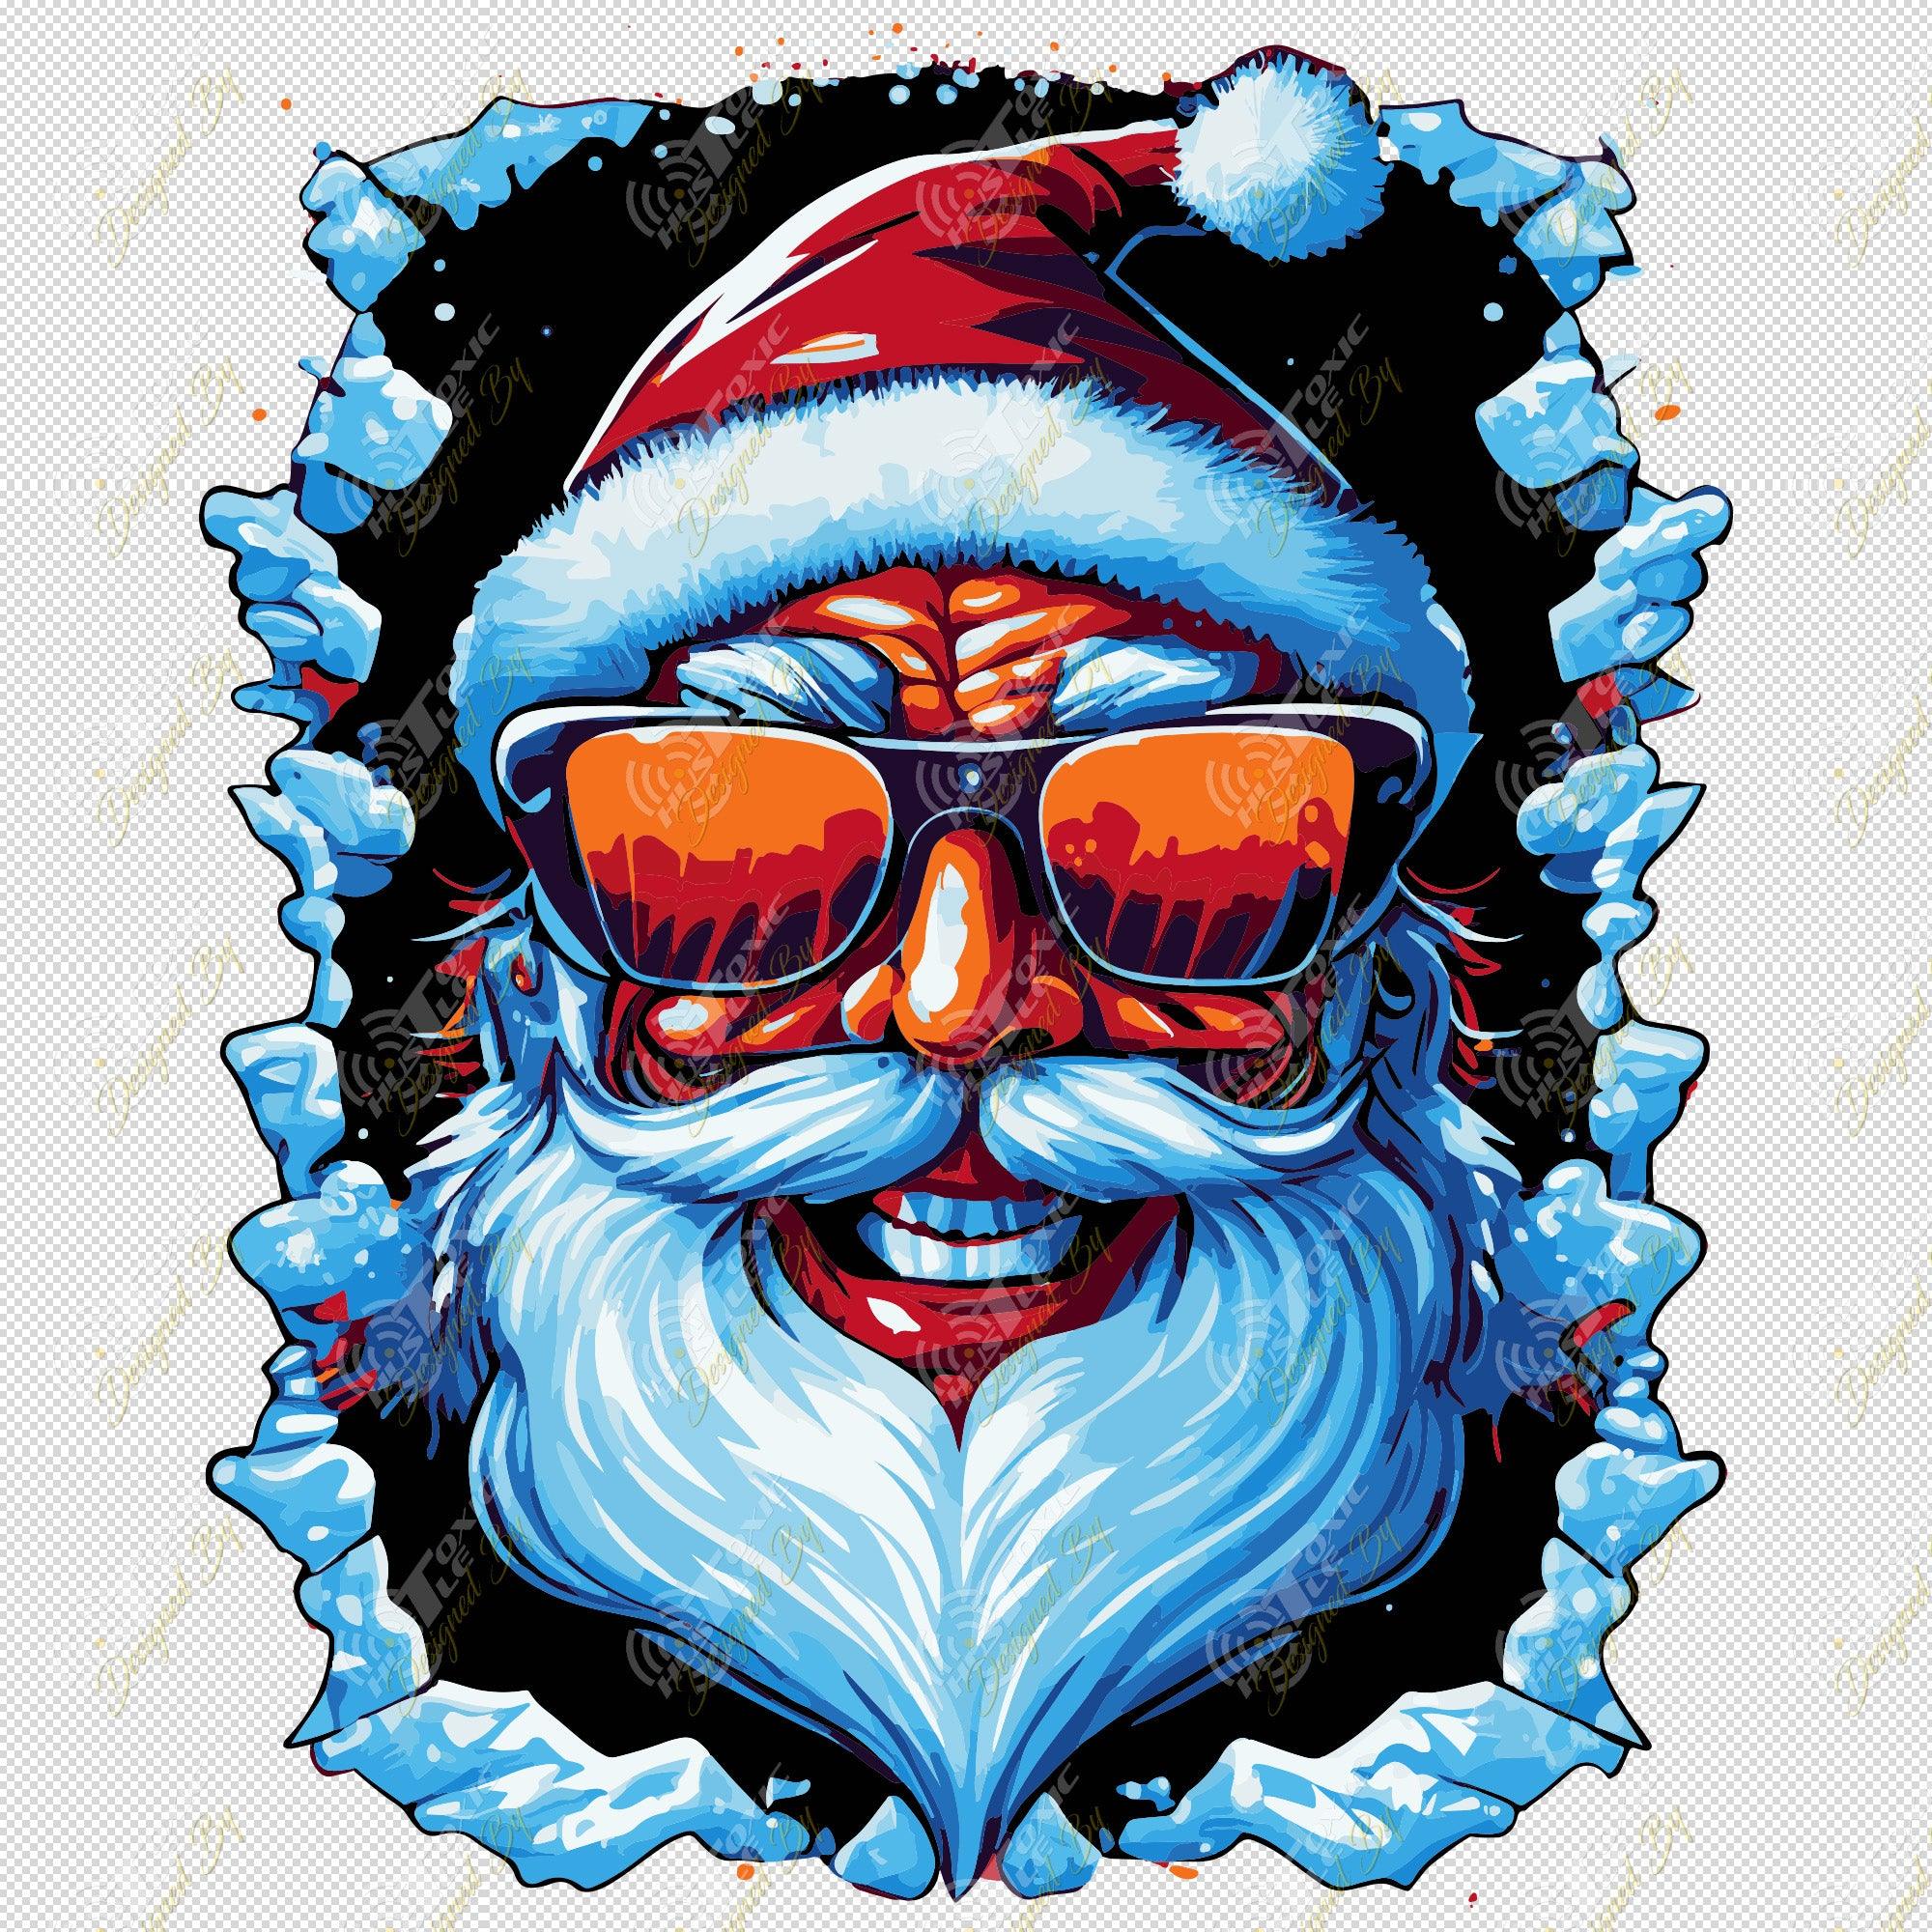 Hipster Santa 2 - PNG - ToxicHustle Designs